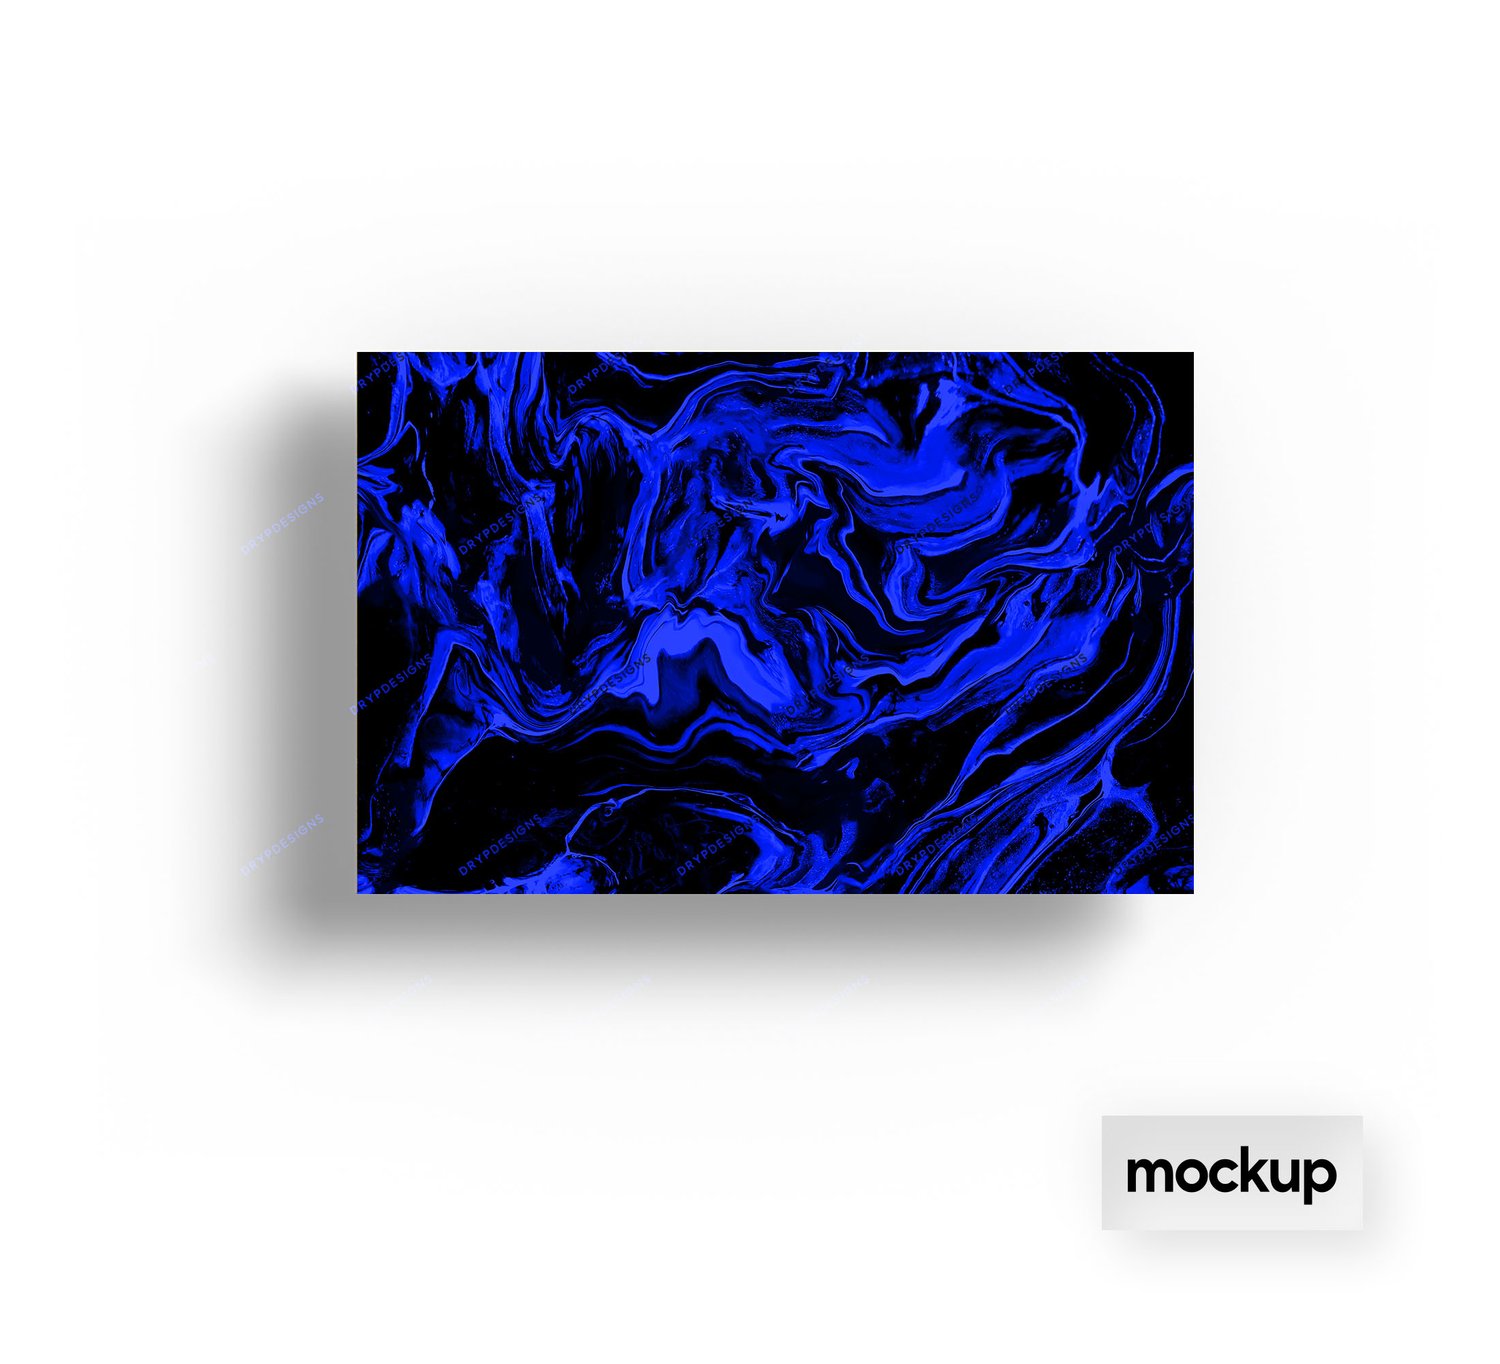 Nền giấy kỹ thuật số liên tục đá lỏng đen + xanh sắc nét và trang nhã. Sự phối hợp giữa hai màu đen và xanh nền cùng với khối đá lỏng tạo nên một bức tranh trừu tượng đầy sức hút.